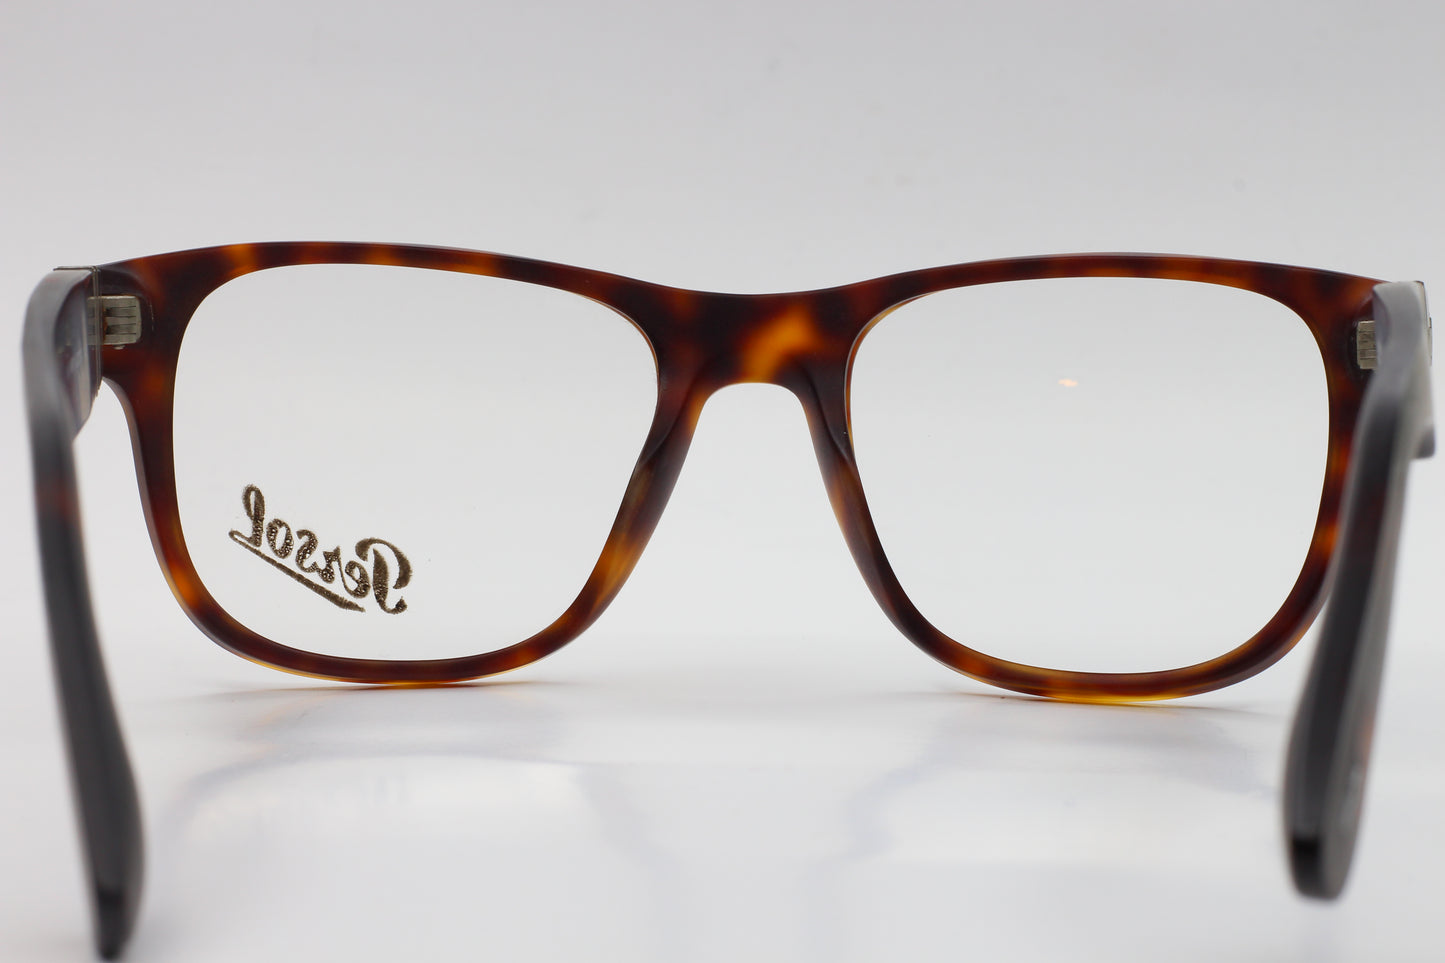 Persol PO3051V 9001 Havana Tortoise Eyeglasses -Ma